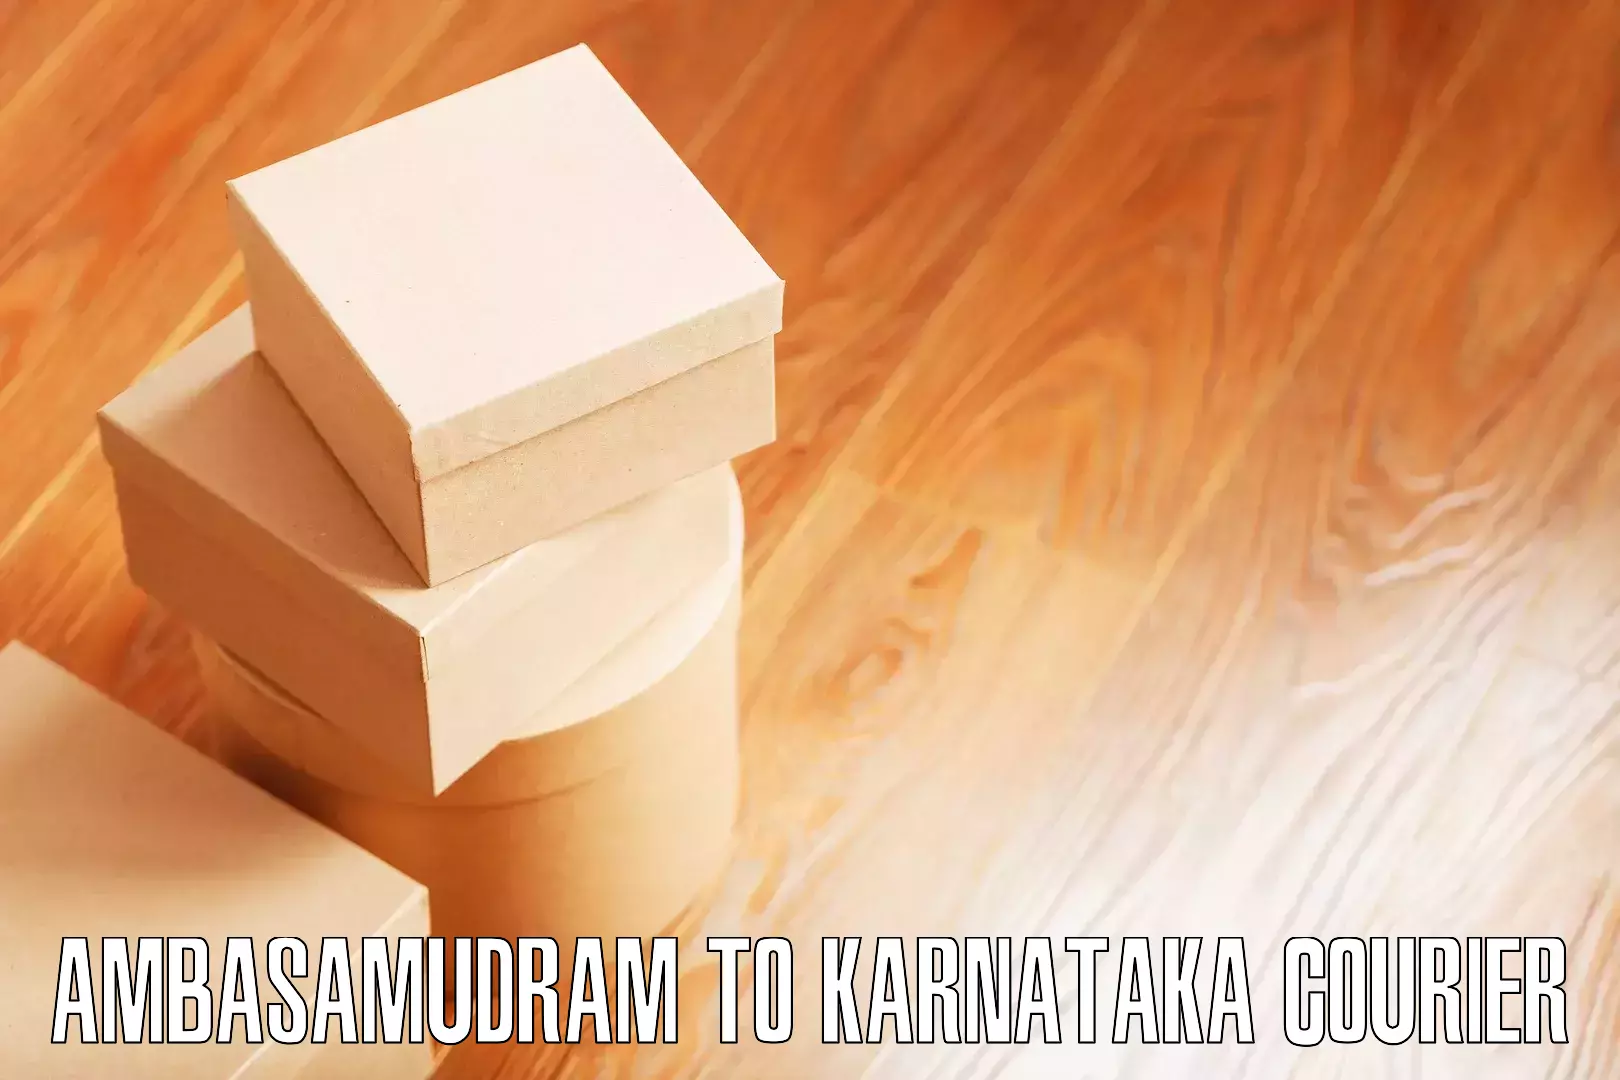 Efficient home goods movers Ambasamudram to Karnataka